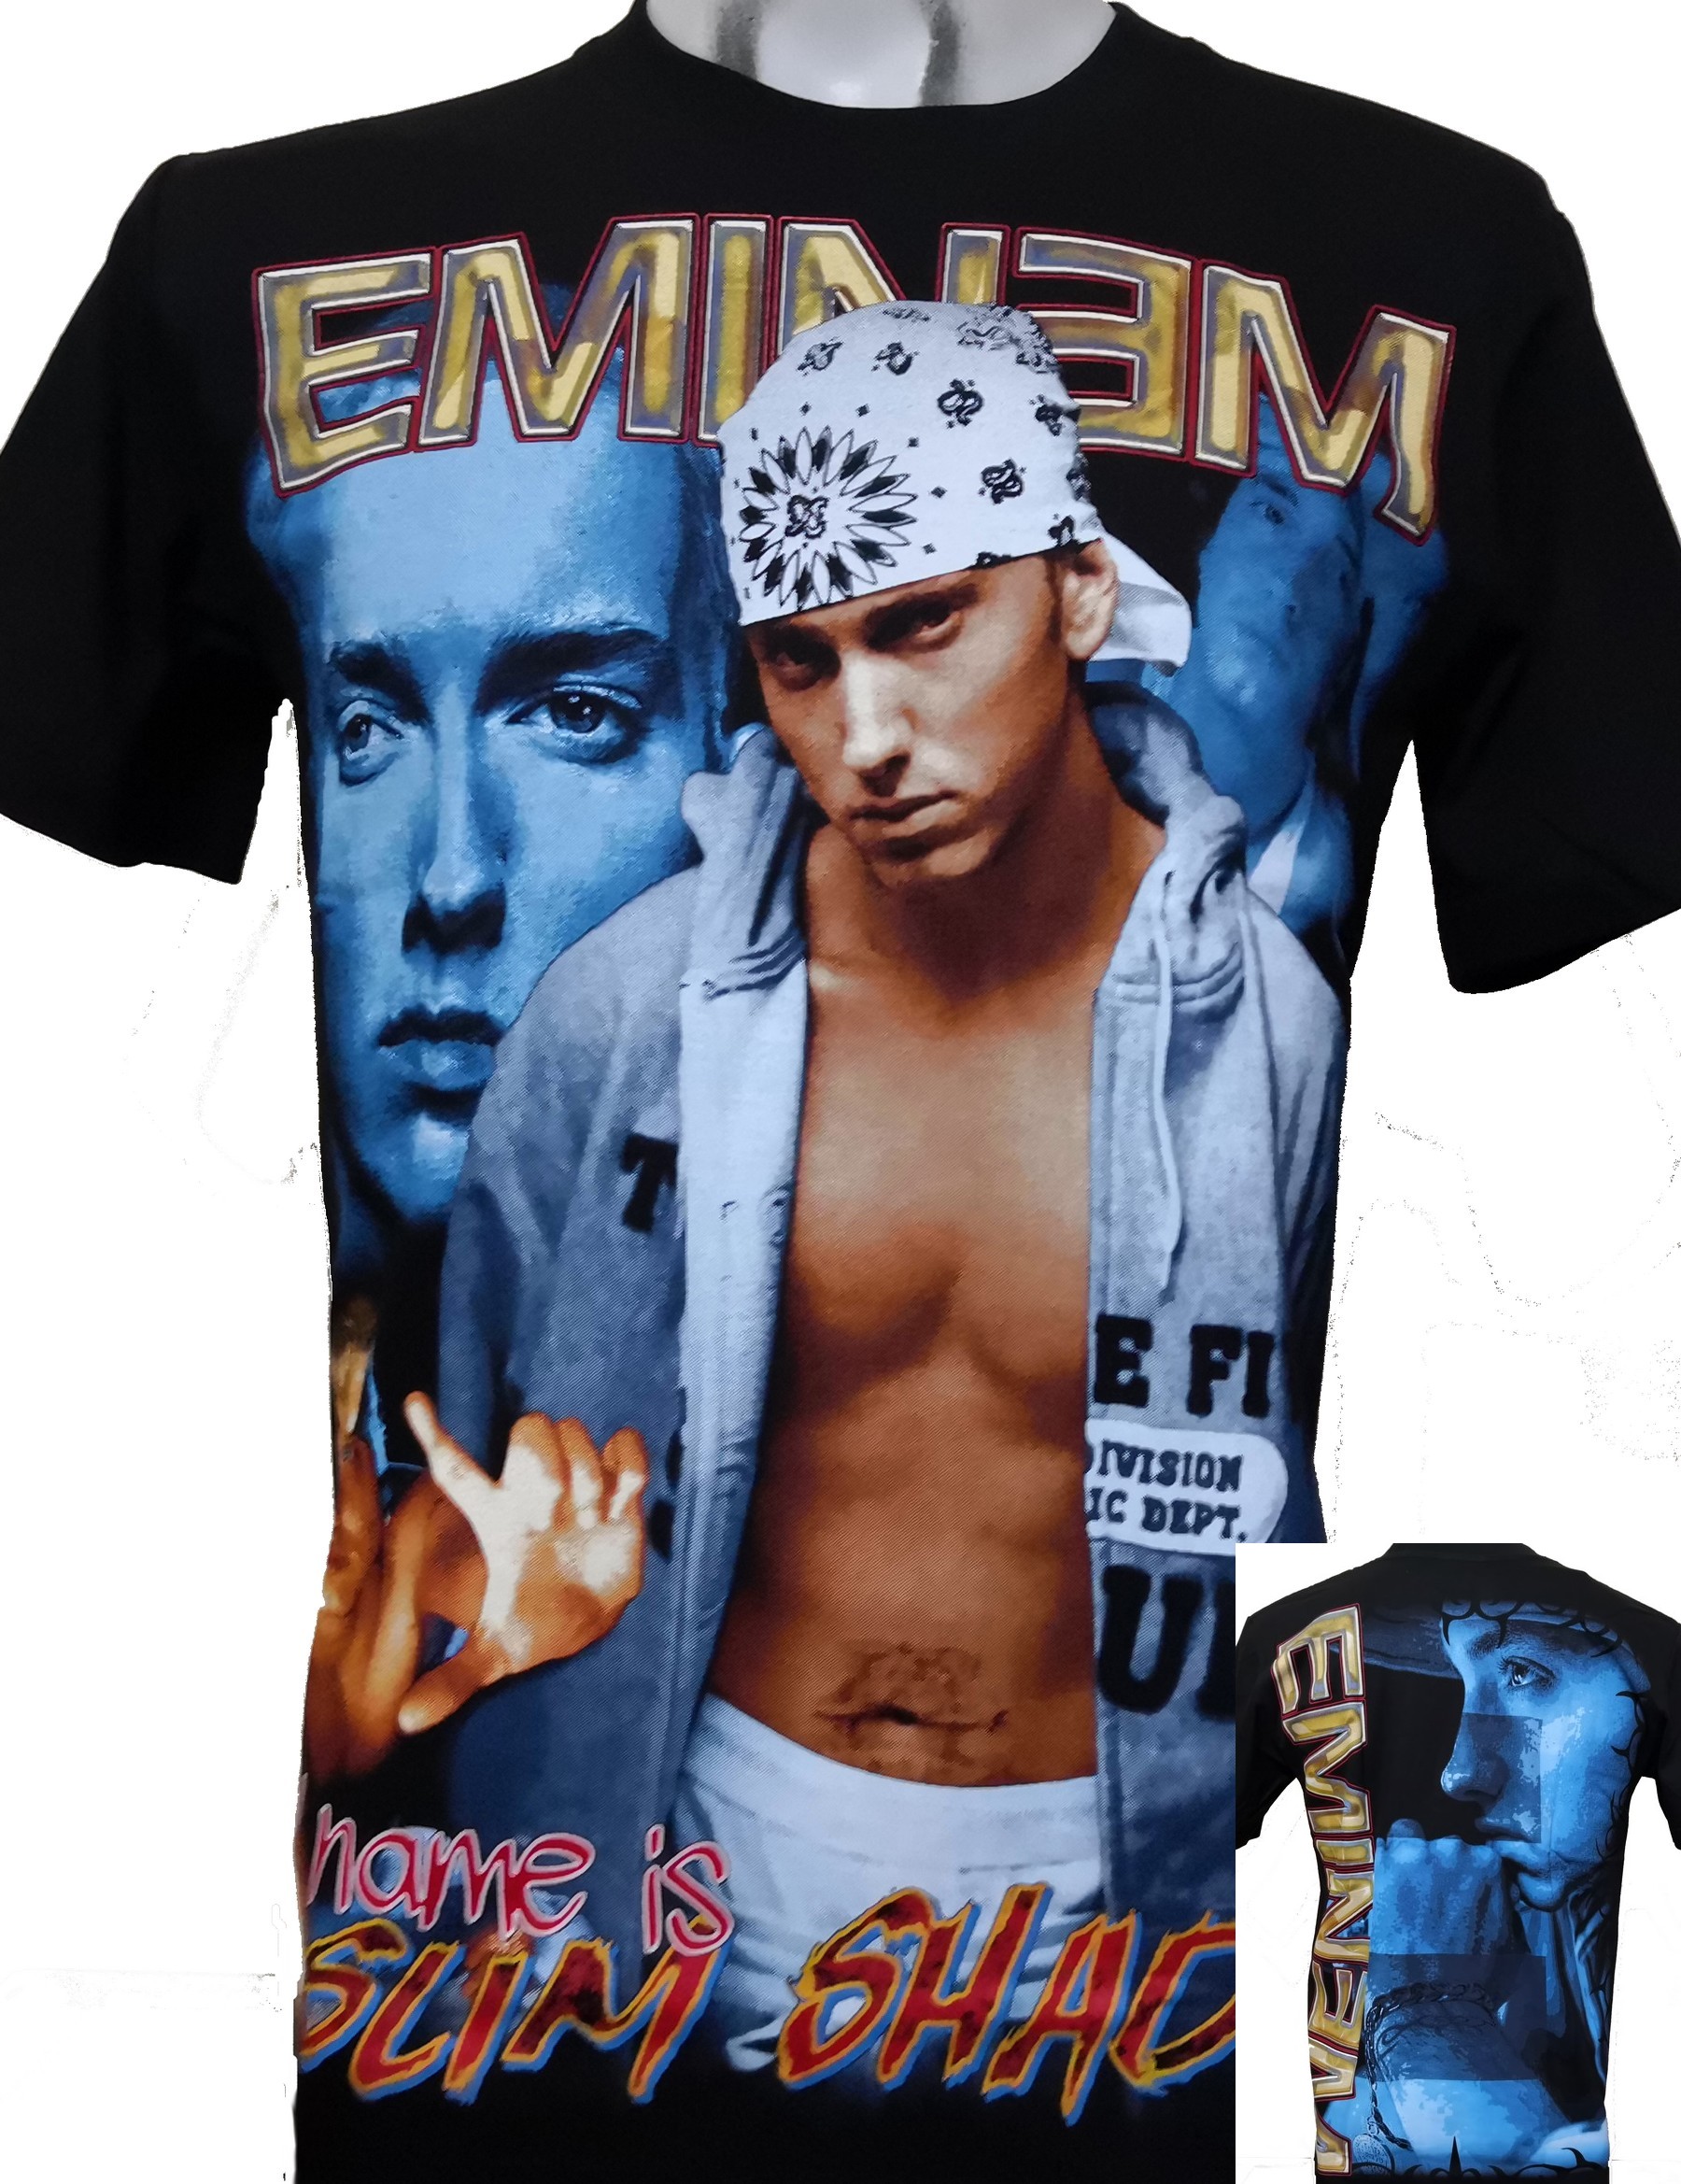 Shadyxv Eminem T shirt - Superstar T shirts 